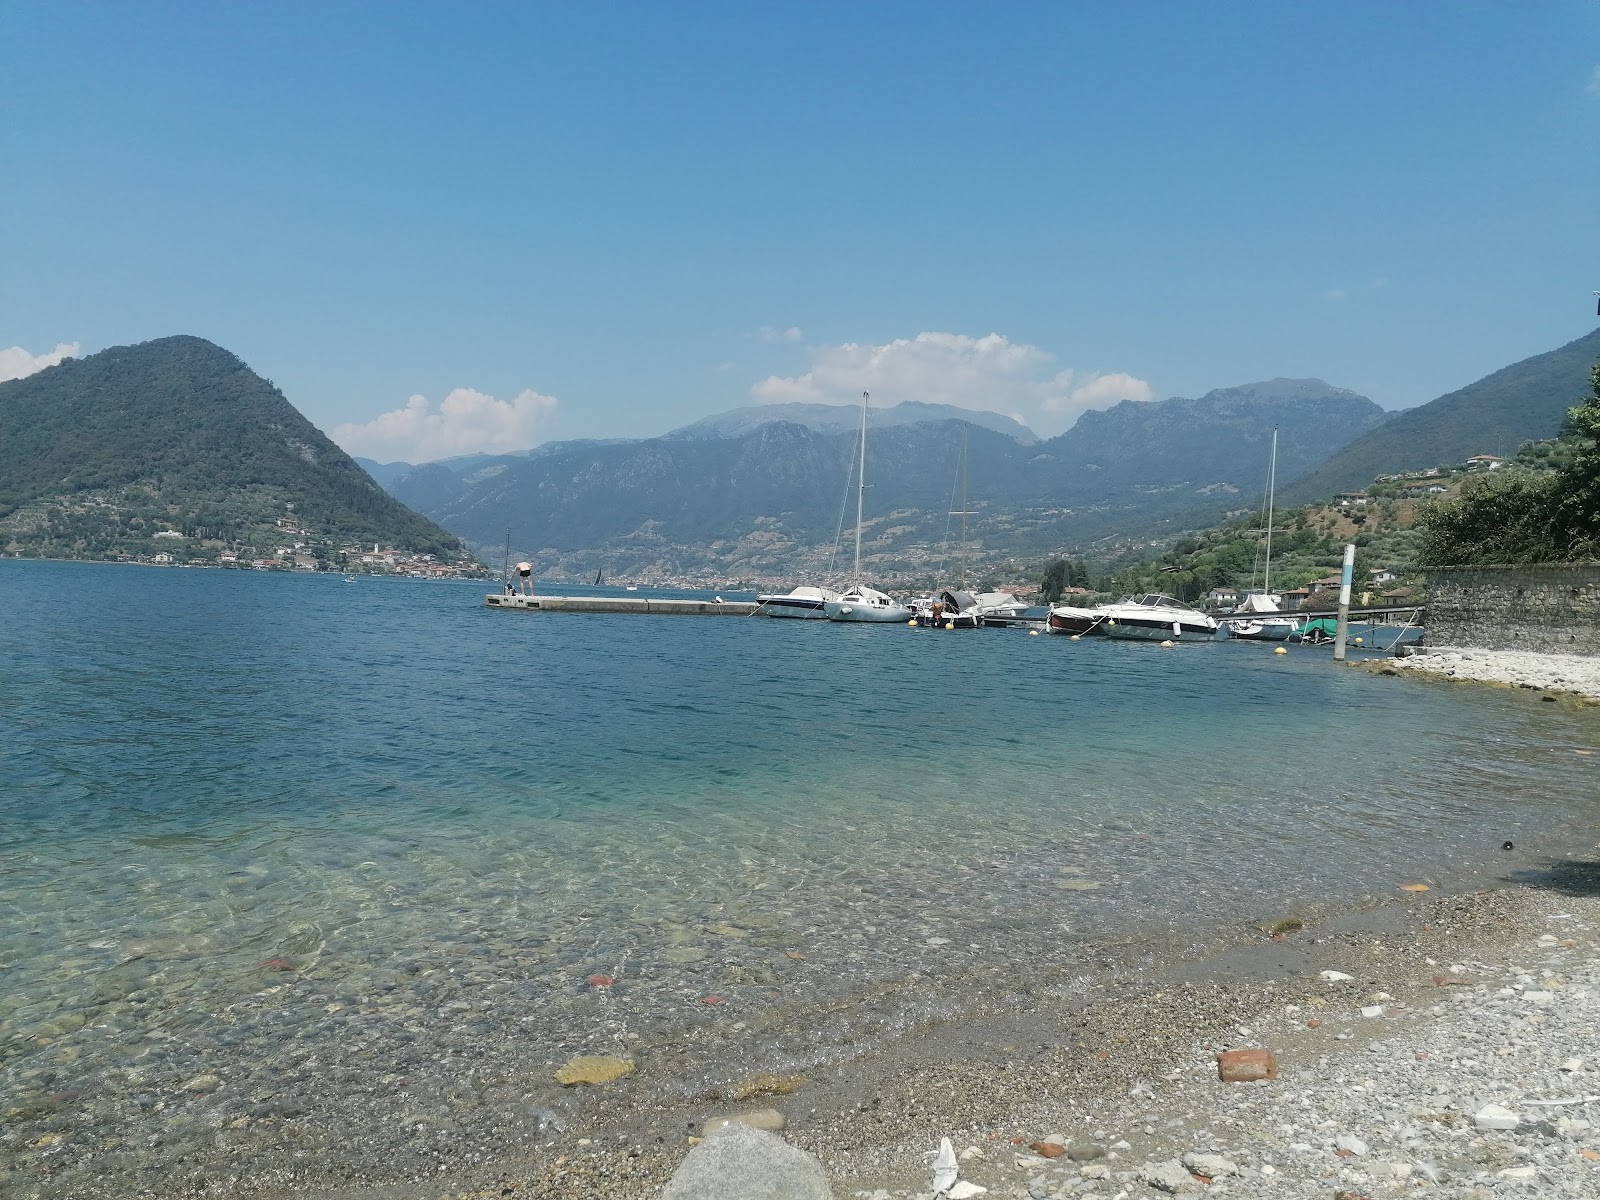 Photo of Spiaggia Sulzano with small multi bays